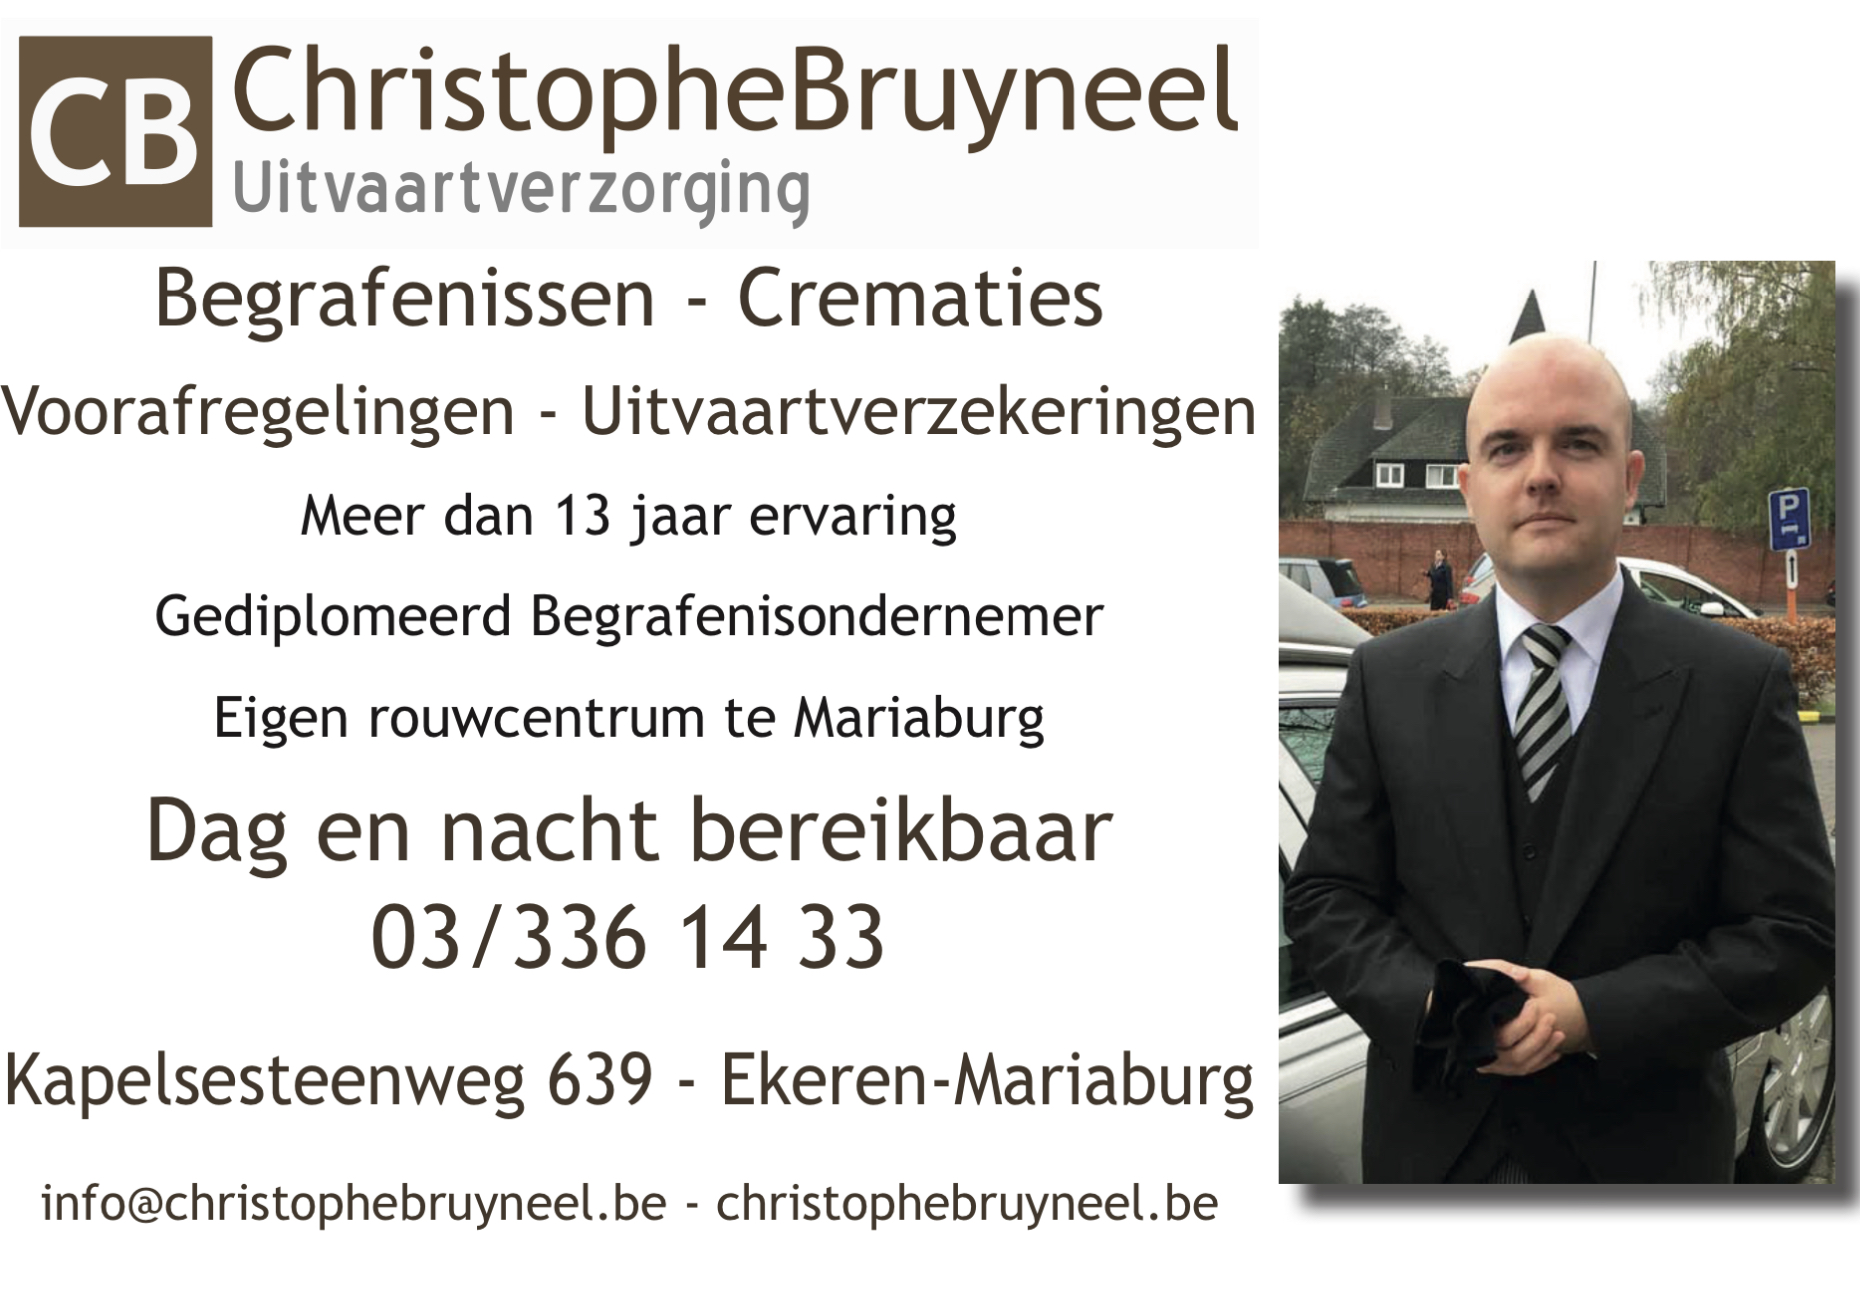 Christophe Bruyneel Uitvaartzorg